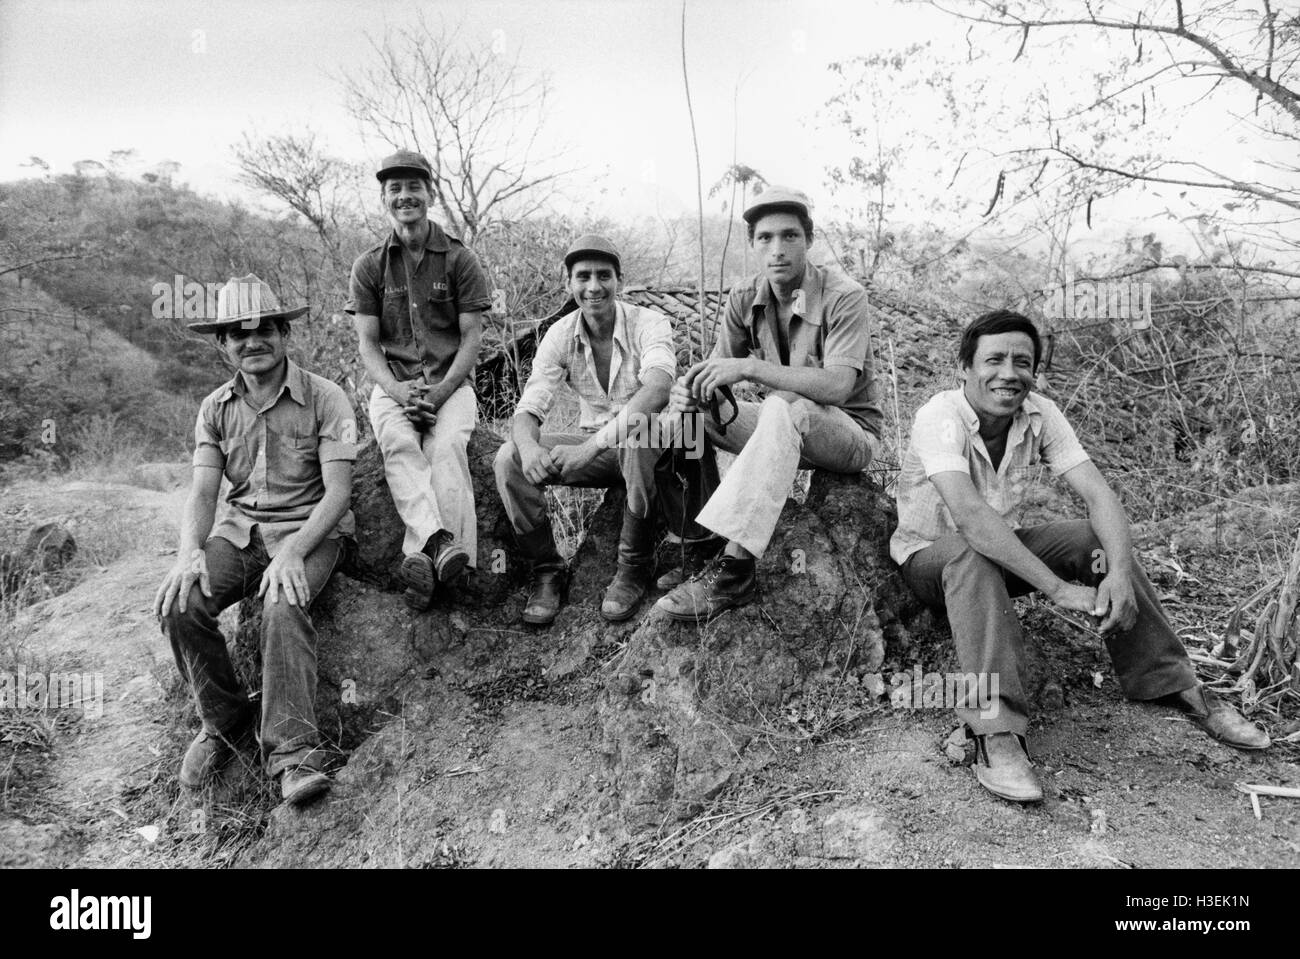 CHALATENANGO, EL SALVADOR, FEB 1984: Gewählt - innerhalb der FPL Guerilla Zonen des Control - PPL (lokalen beliebten Powers) mit der Verwaltung des Gebiets Guerilla-statt zu arbeiten. Stockfoto